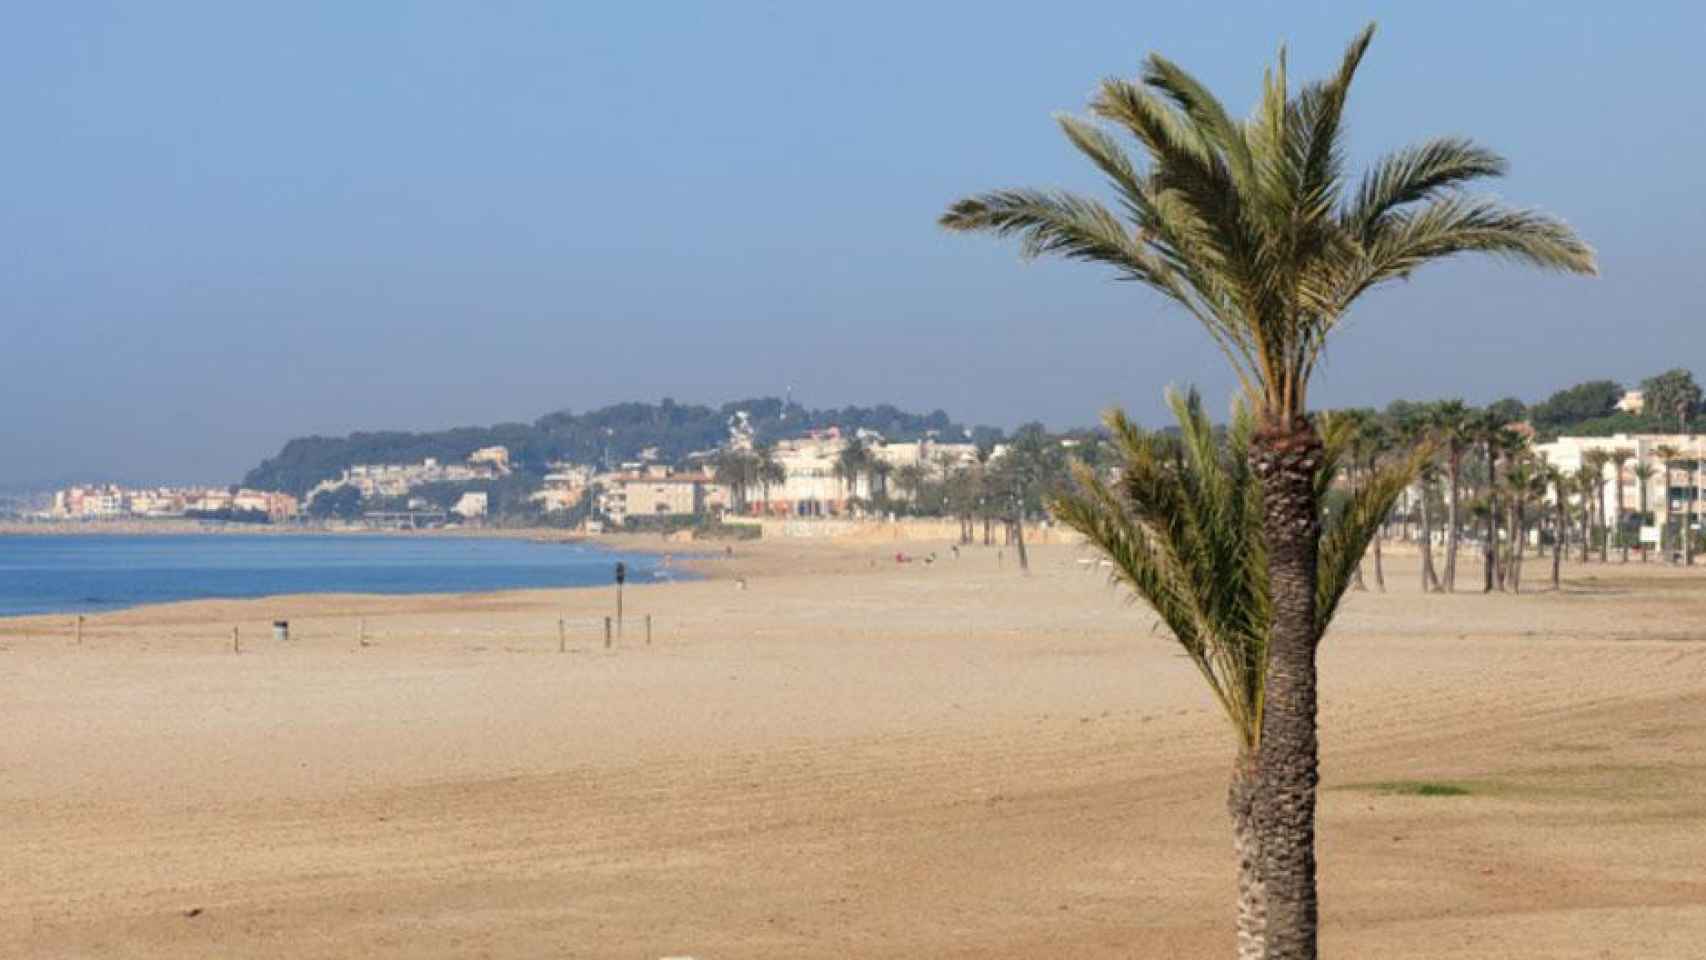 La playa Coma-ruga, en Tarragona, donde ha muerto ahogado un hombre de 71 años / WIKIPEDIA